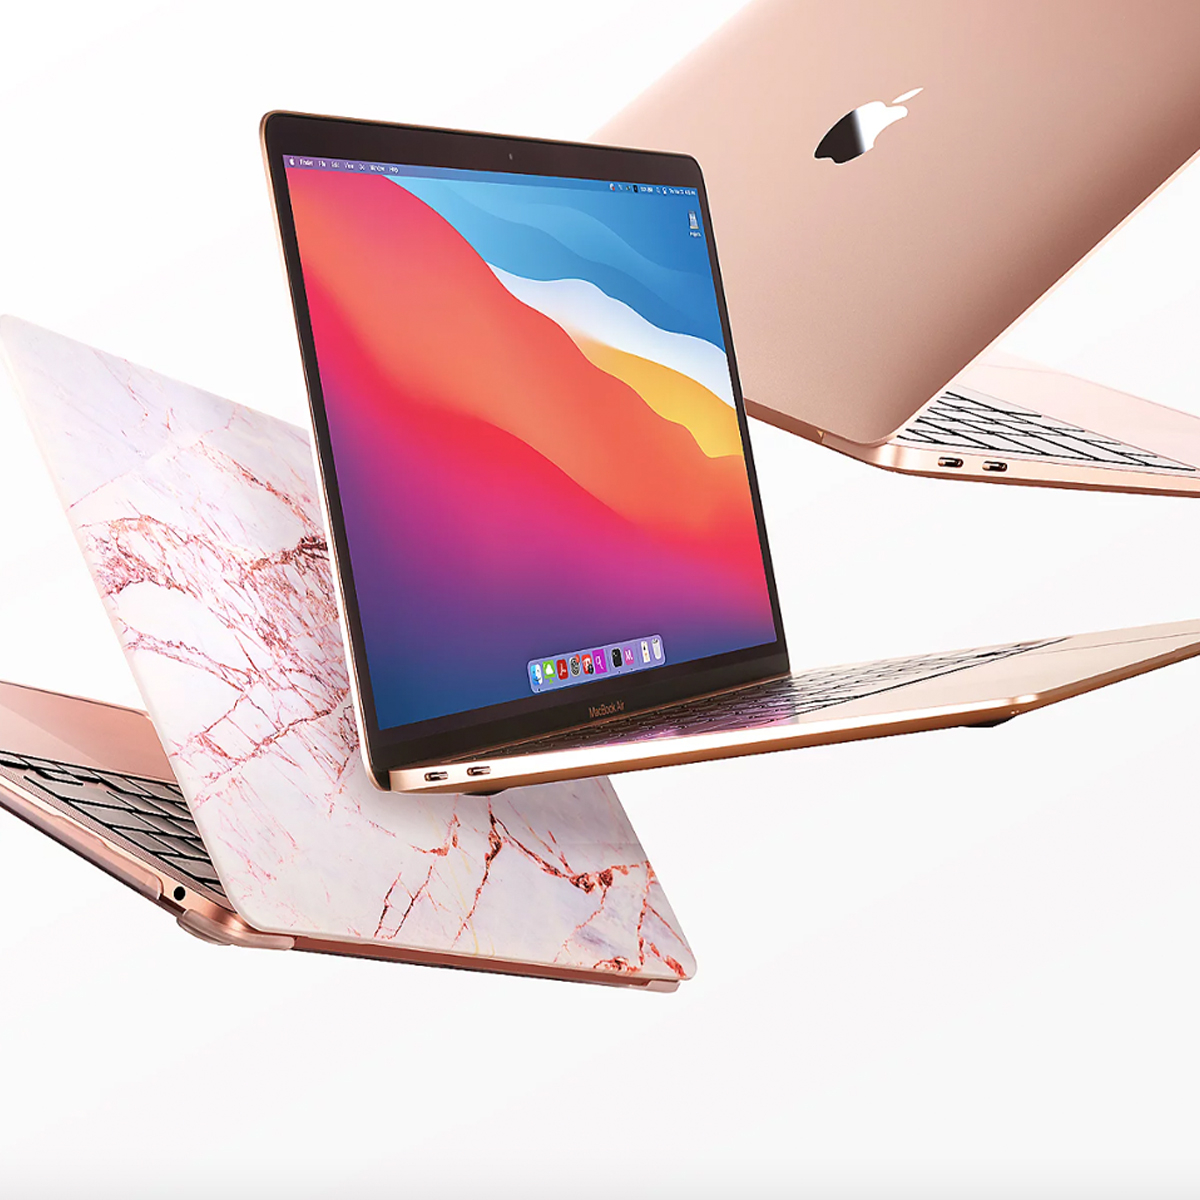 dikte Jeugd douche Apple 48-Hour Flash Deal: Save $481 on MacBook Air Laptop Bundle - E! Online